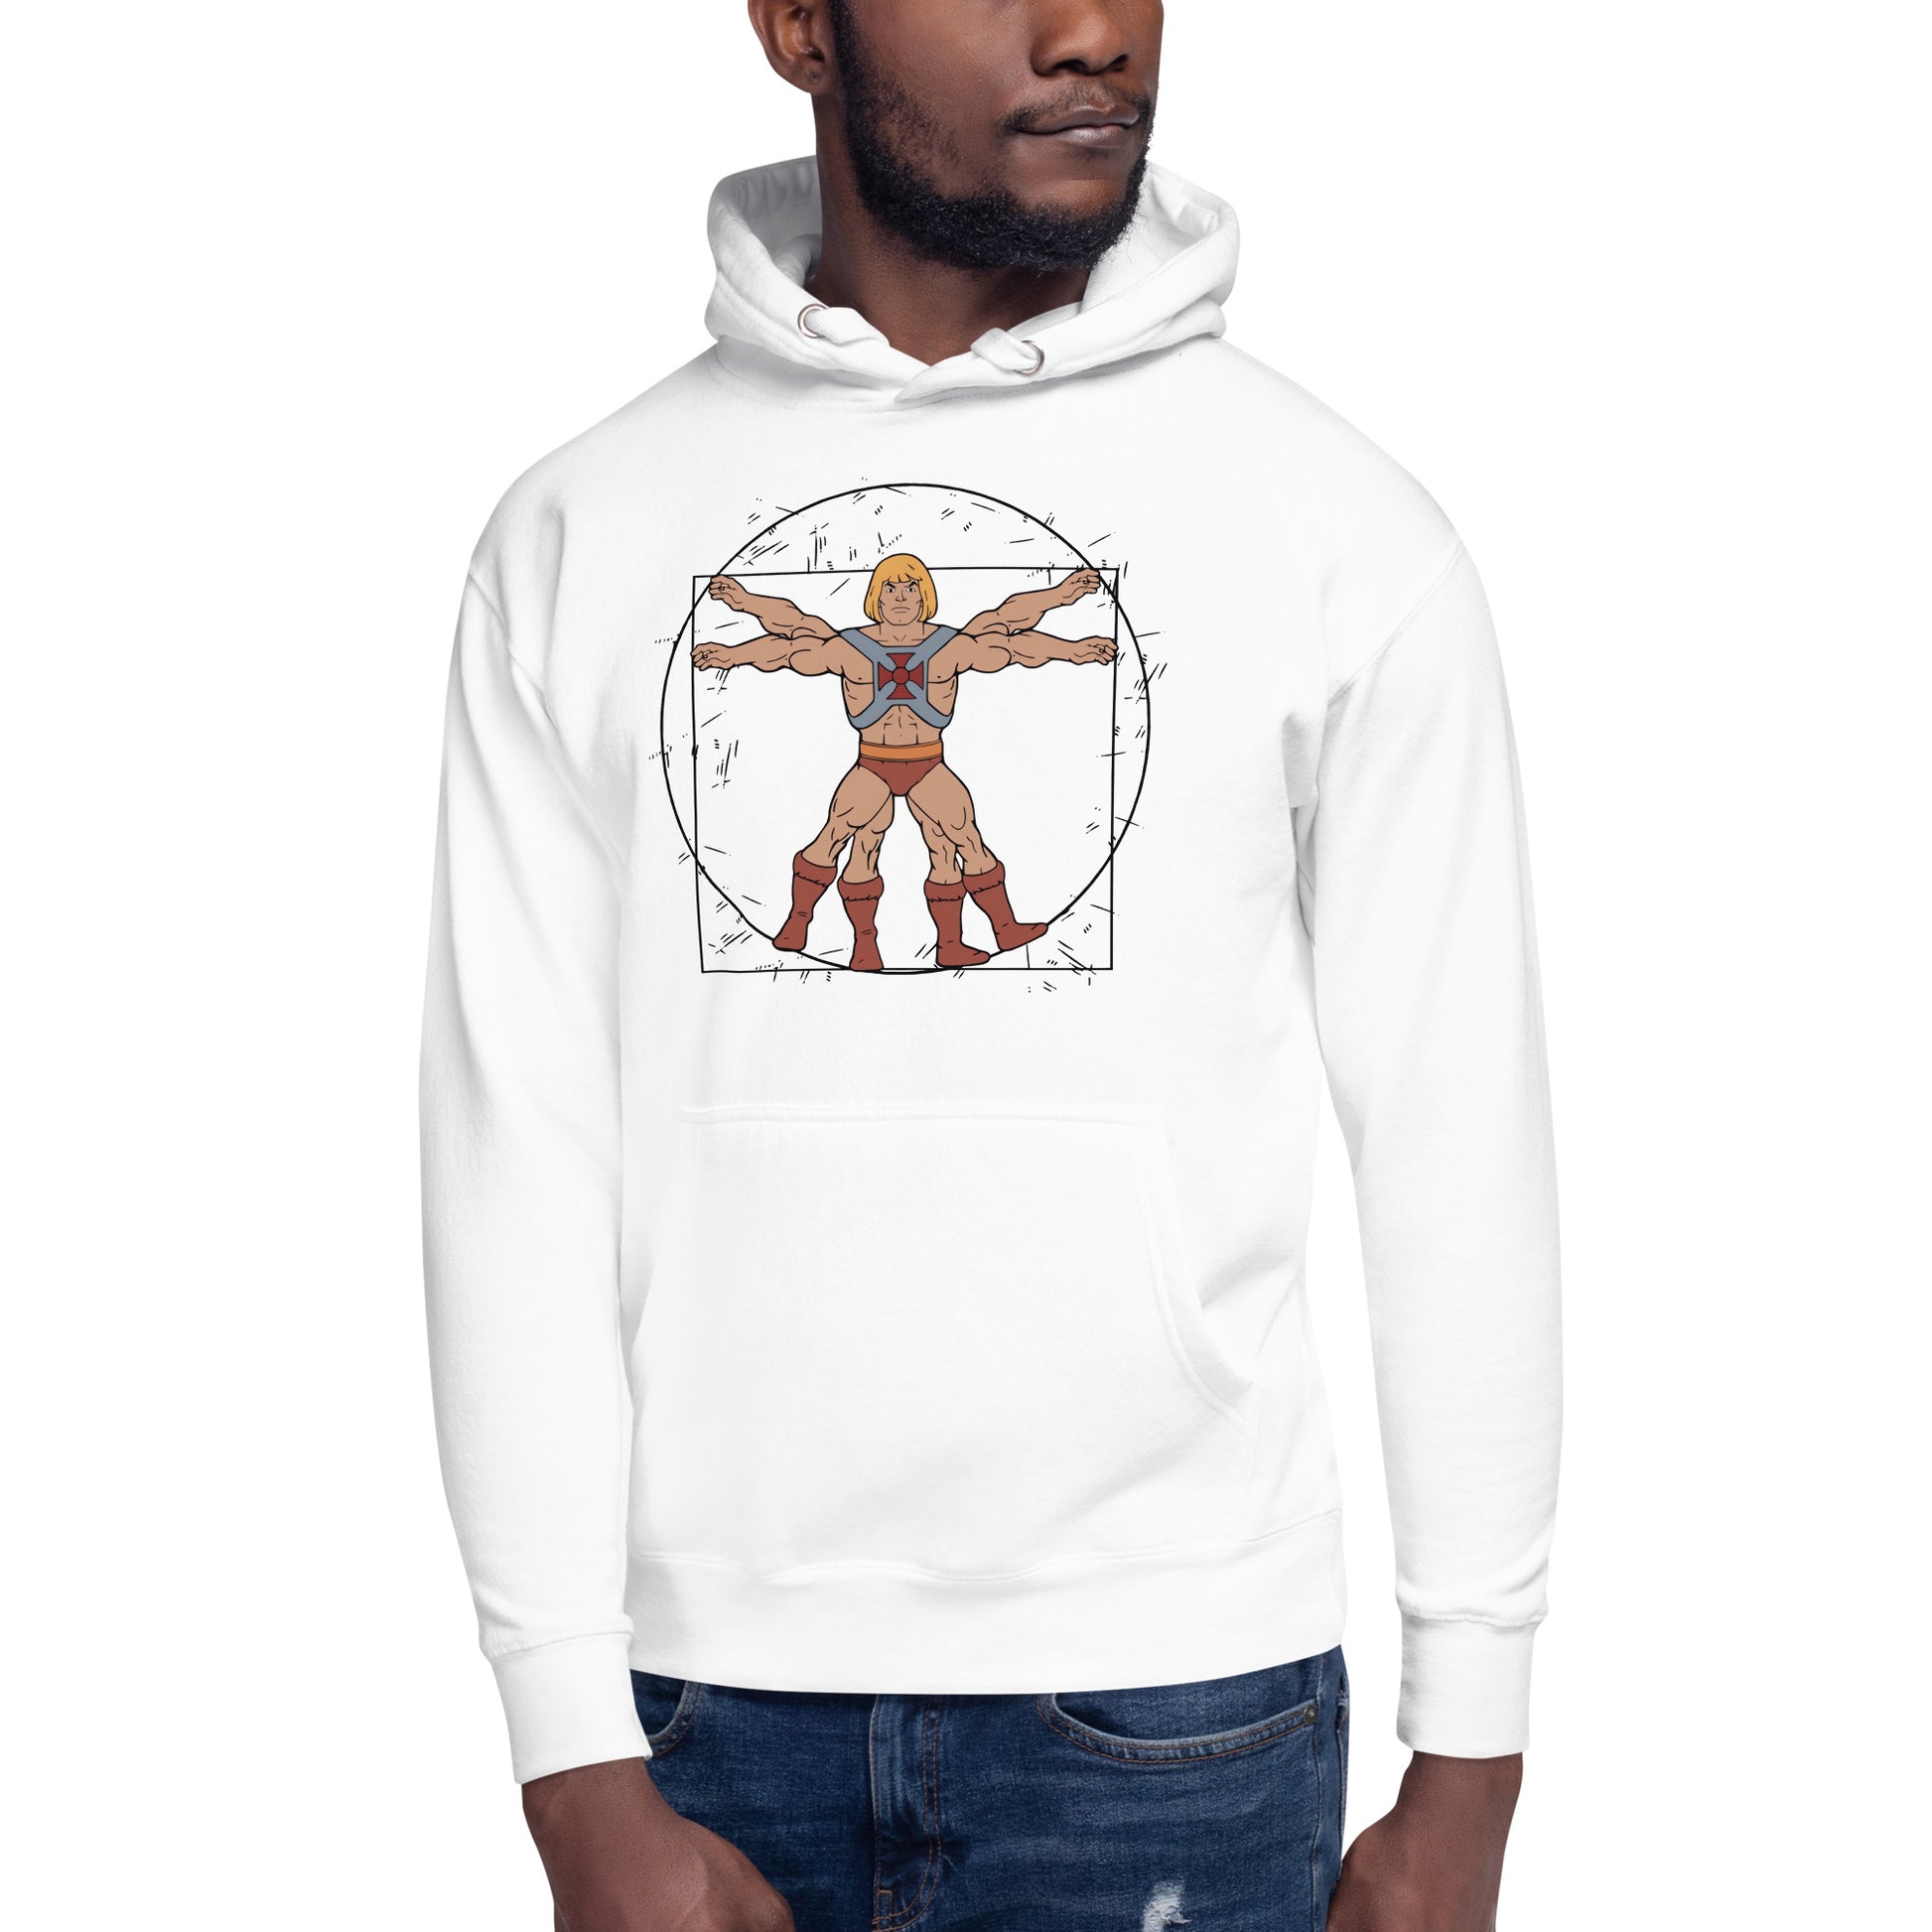 Hoodie Vitruvio He-man, Disponible en la mejor tienda online para comprar tu merch favorita, la mejor Calidad, compra Ahora en Superstar!